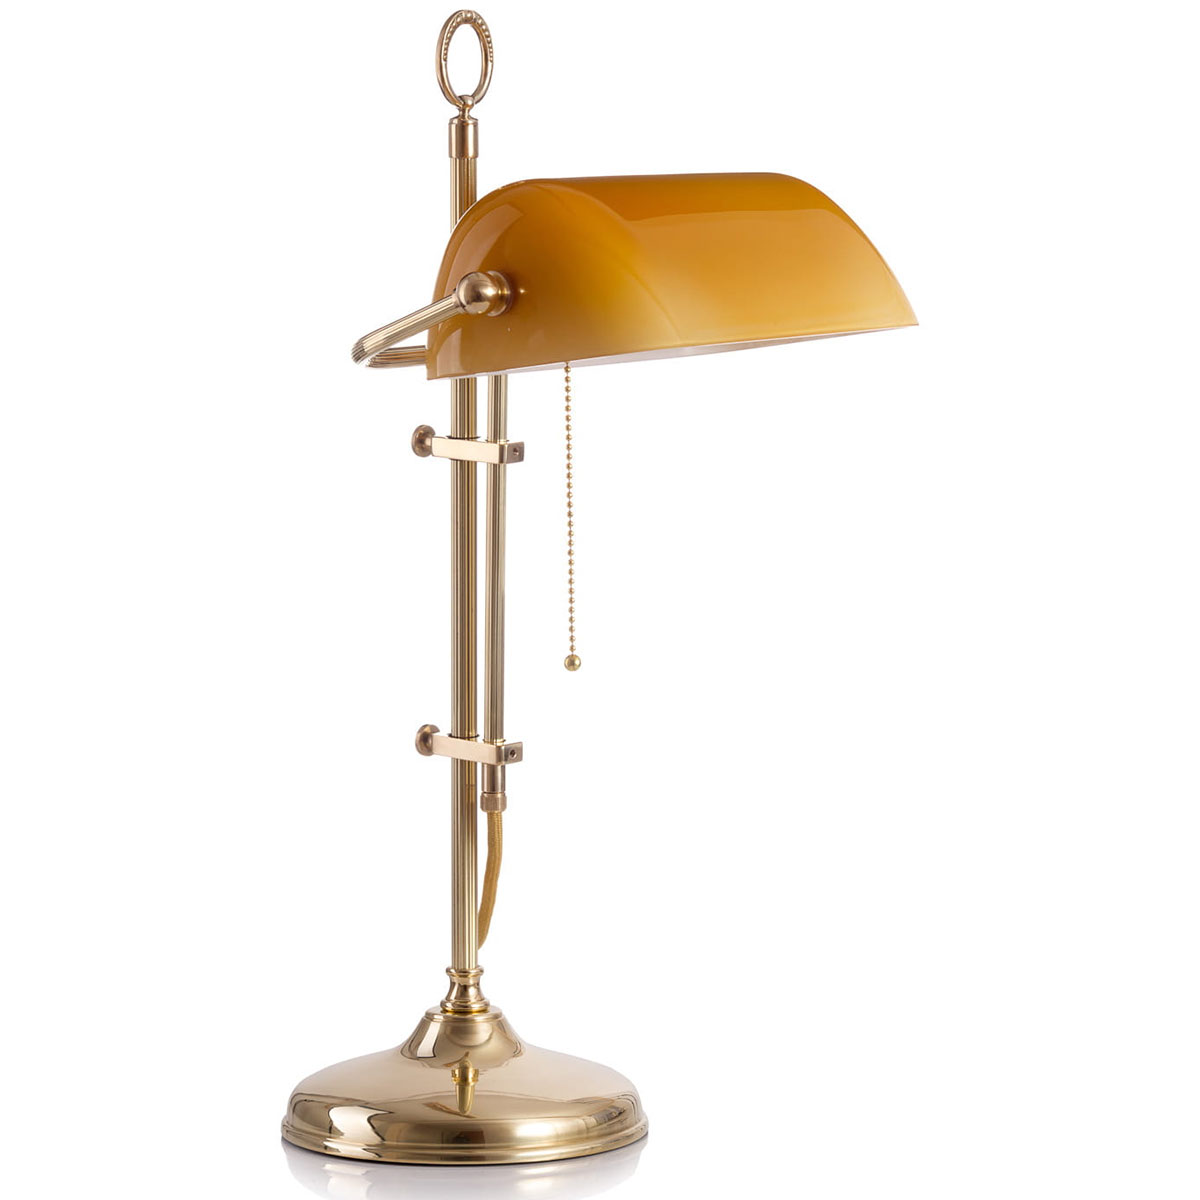 Klassische Schreibtischlampe: Bankerlampe mit rundem Sockel: Messing poliert, mit kanneliertem Gestänge, cognacfarbener Glas-Schirm